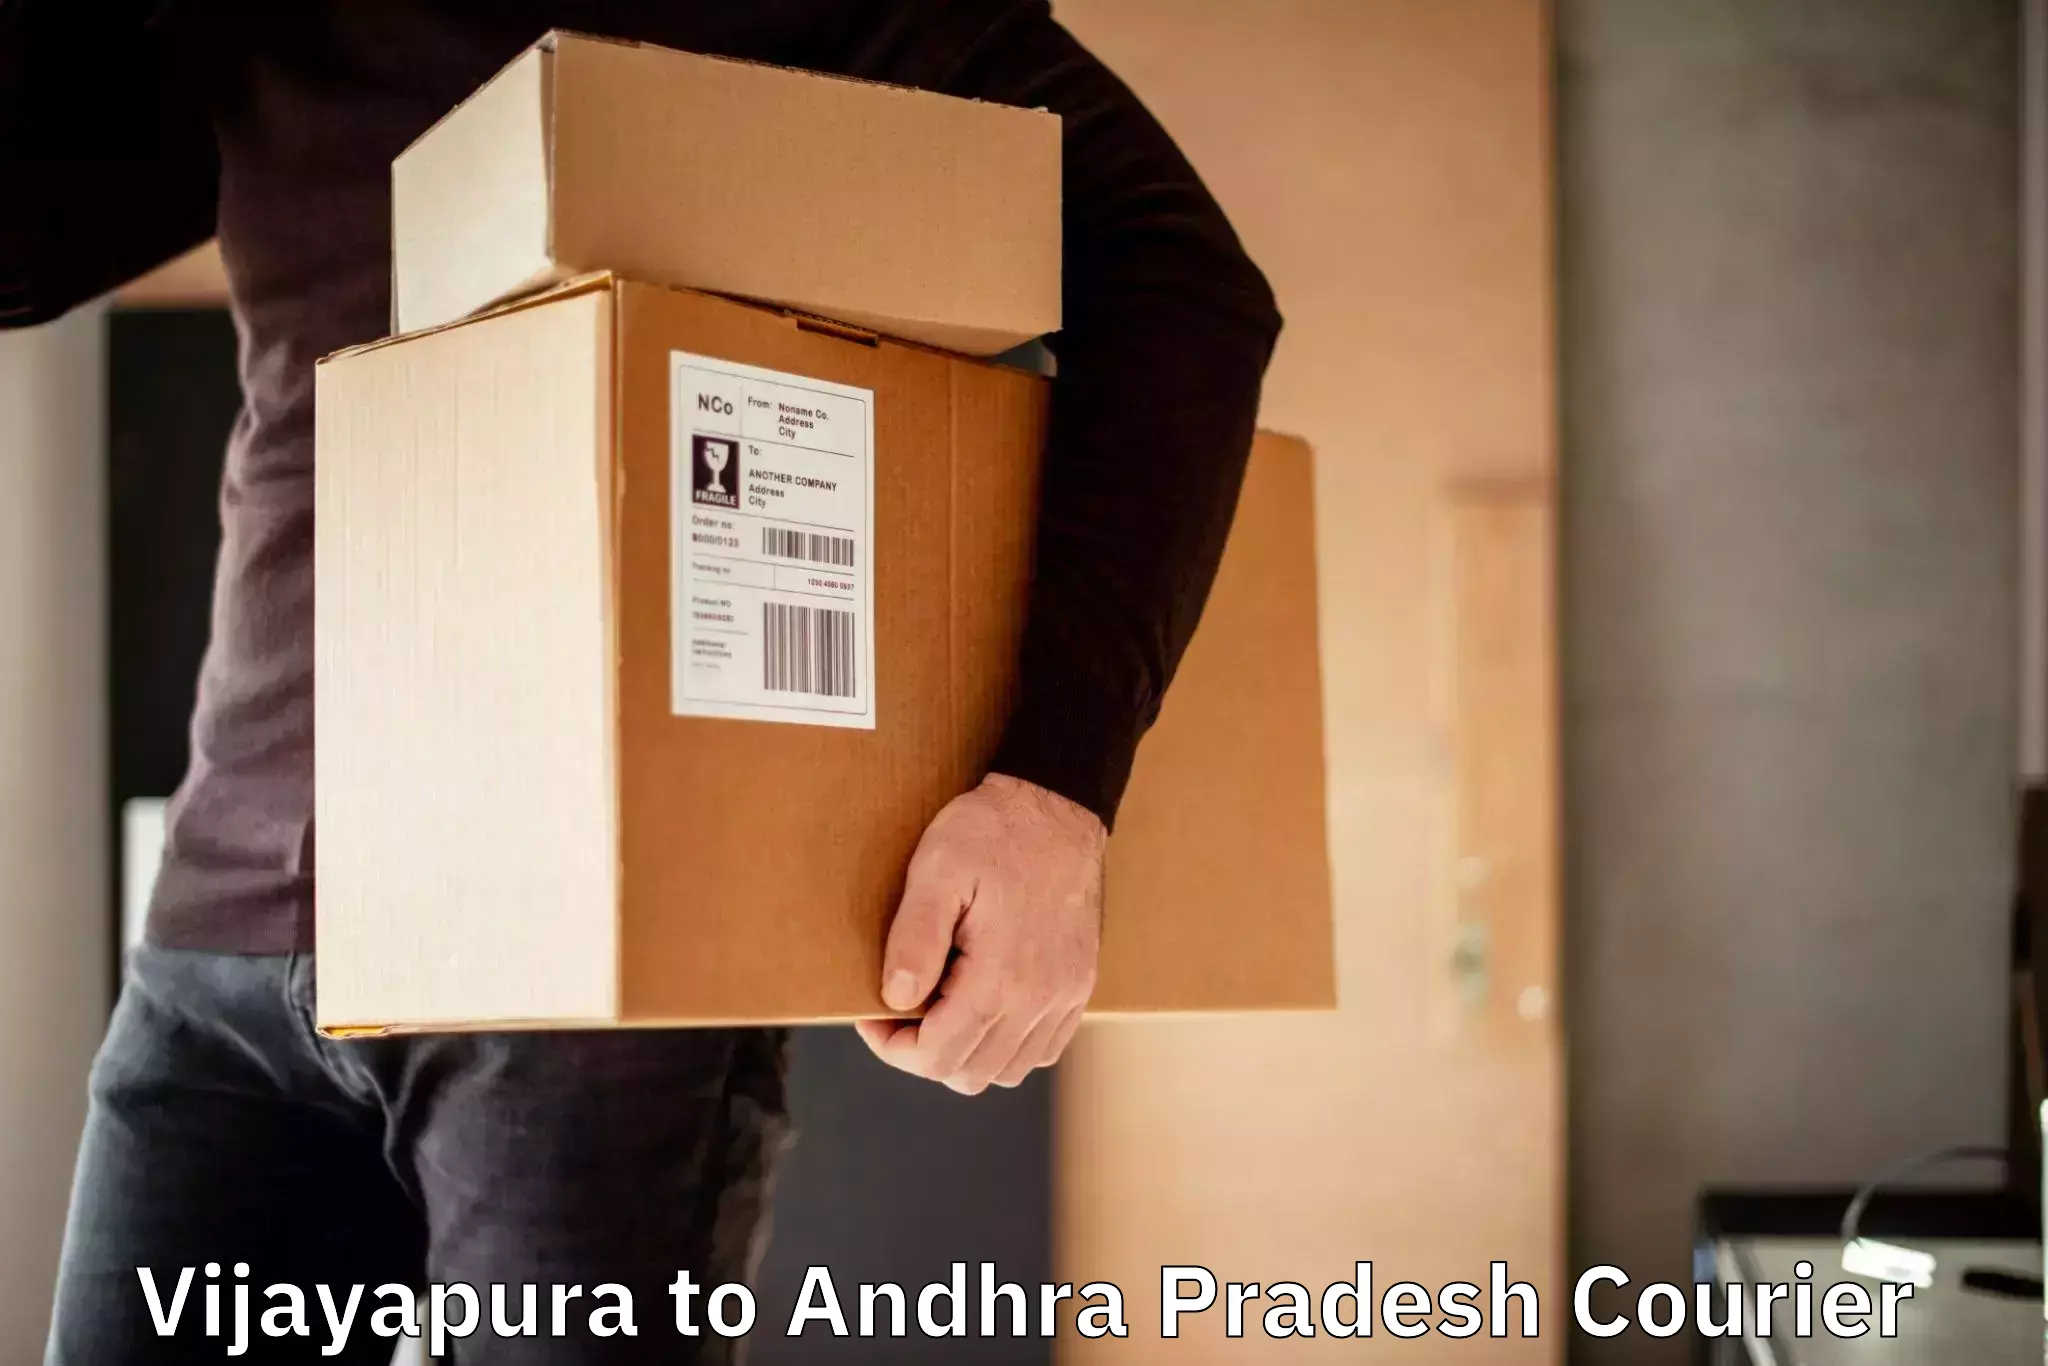 Next day courier Vijayapura to Andhra Pradesh